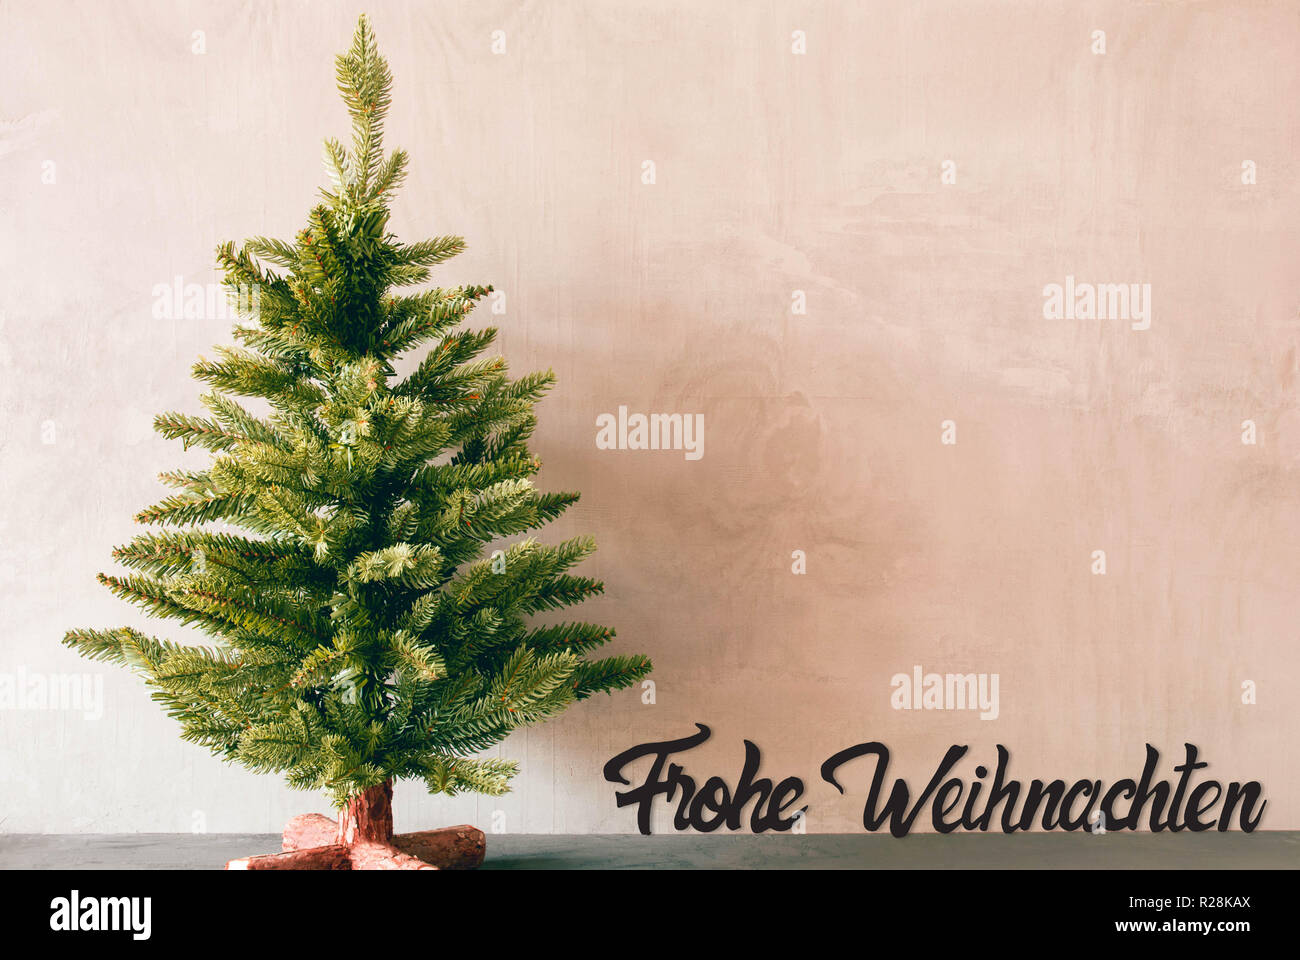 Albero verde, Calligrafia Frohe Weihnachten significa Buon Natale Foto Stock